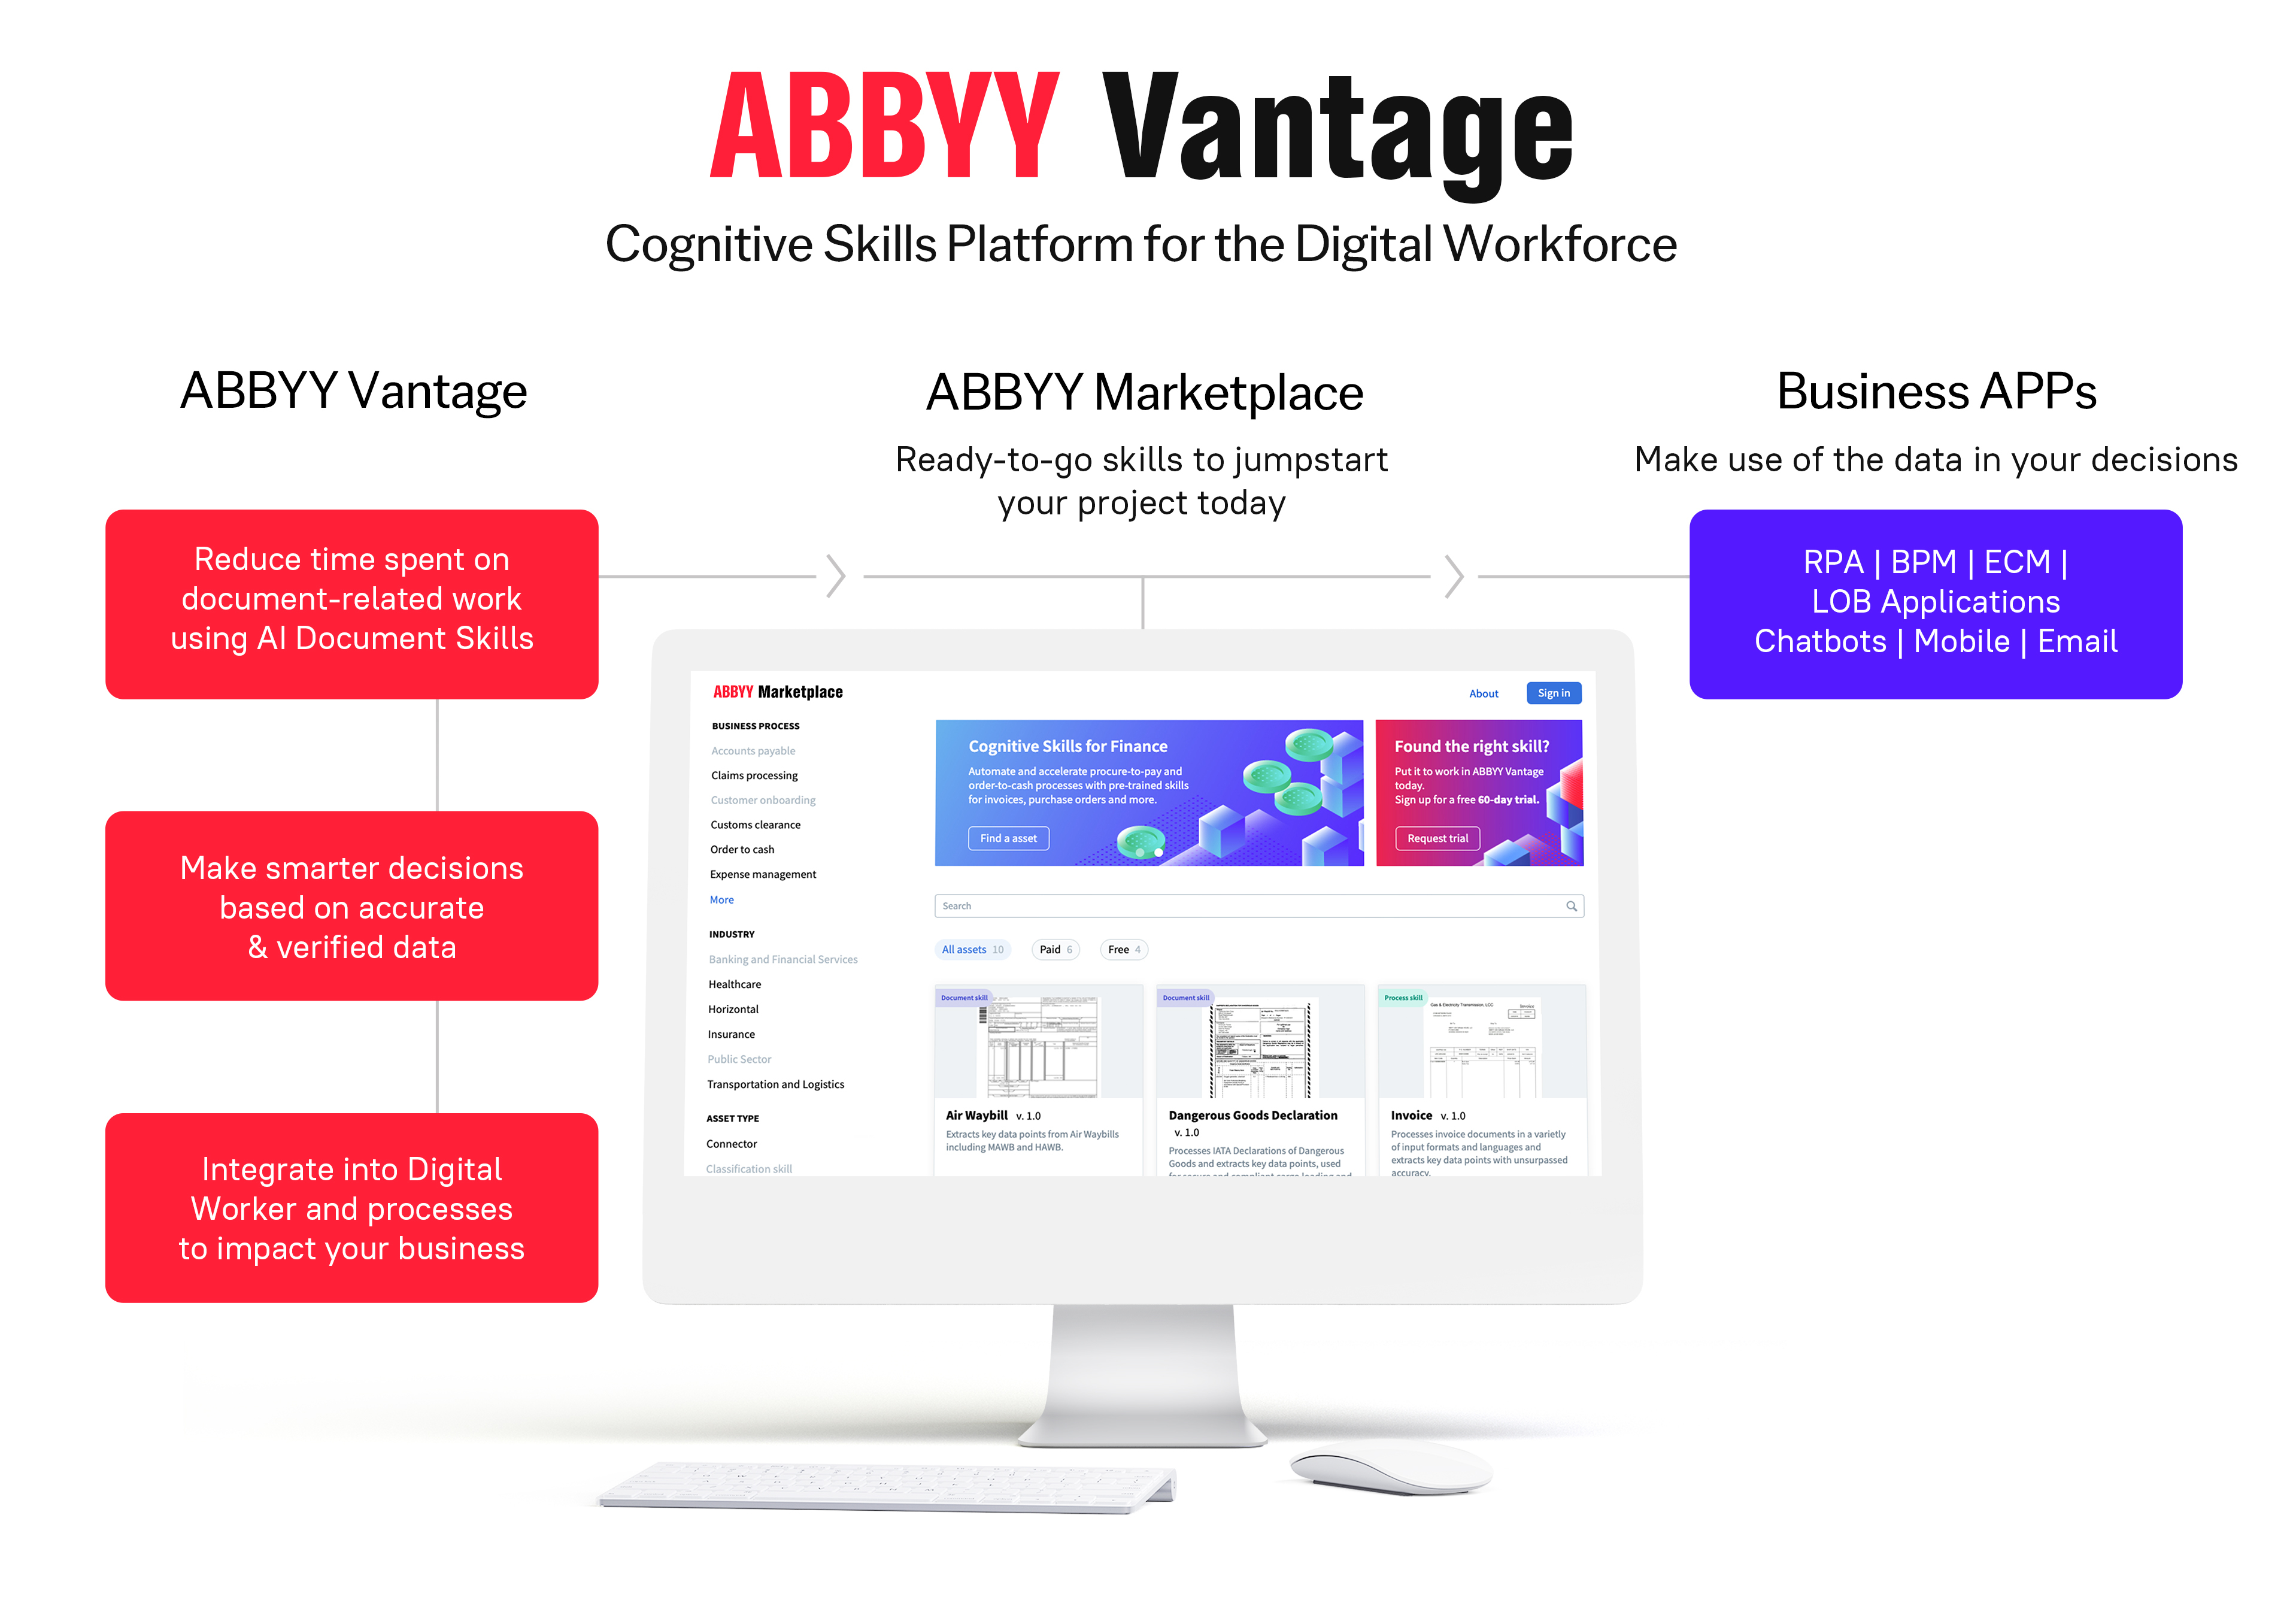 ABBYY, Software Company